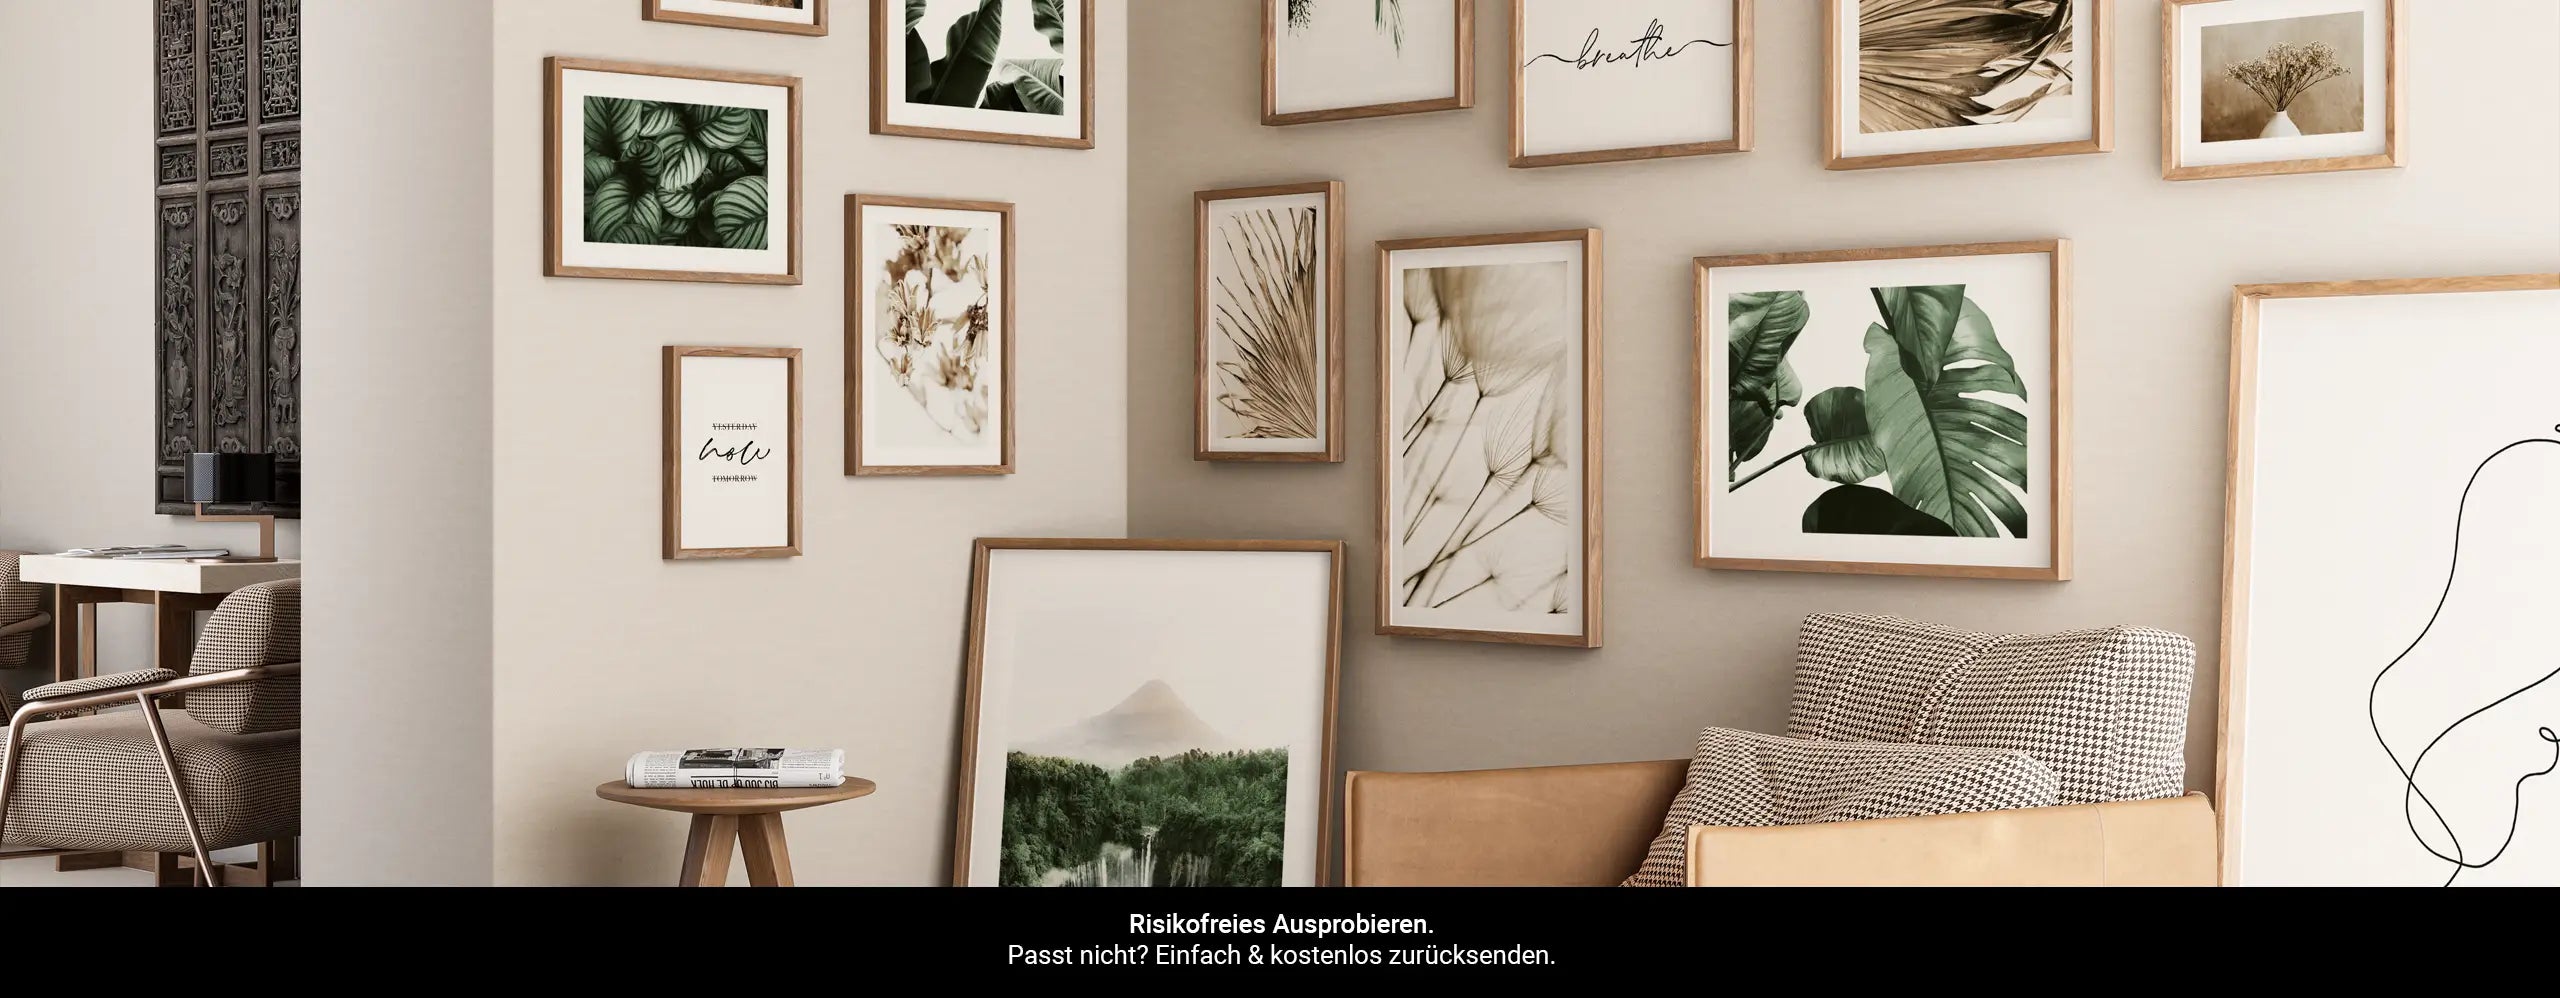 Elegante Botanik Poster mit edlen Pflanzen Motiven in wunderschönen Beige, Grün & Rosa Tönen. Ein Poster Set das dein Interieur ungemein aufwertet